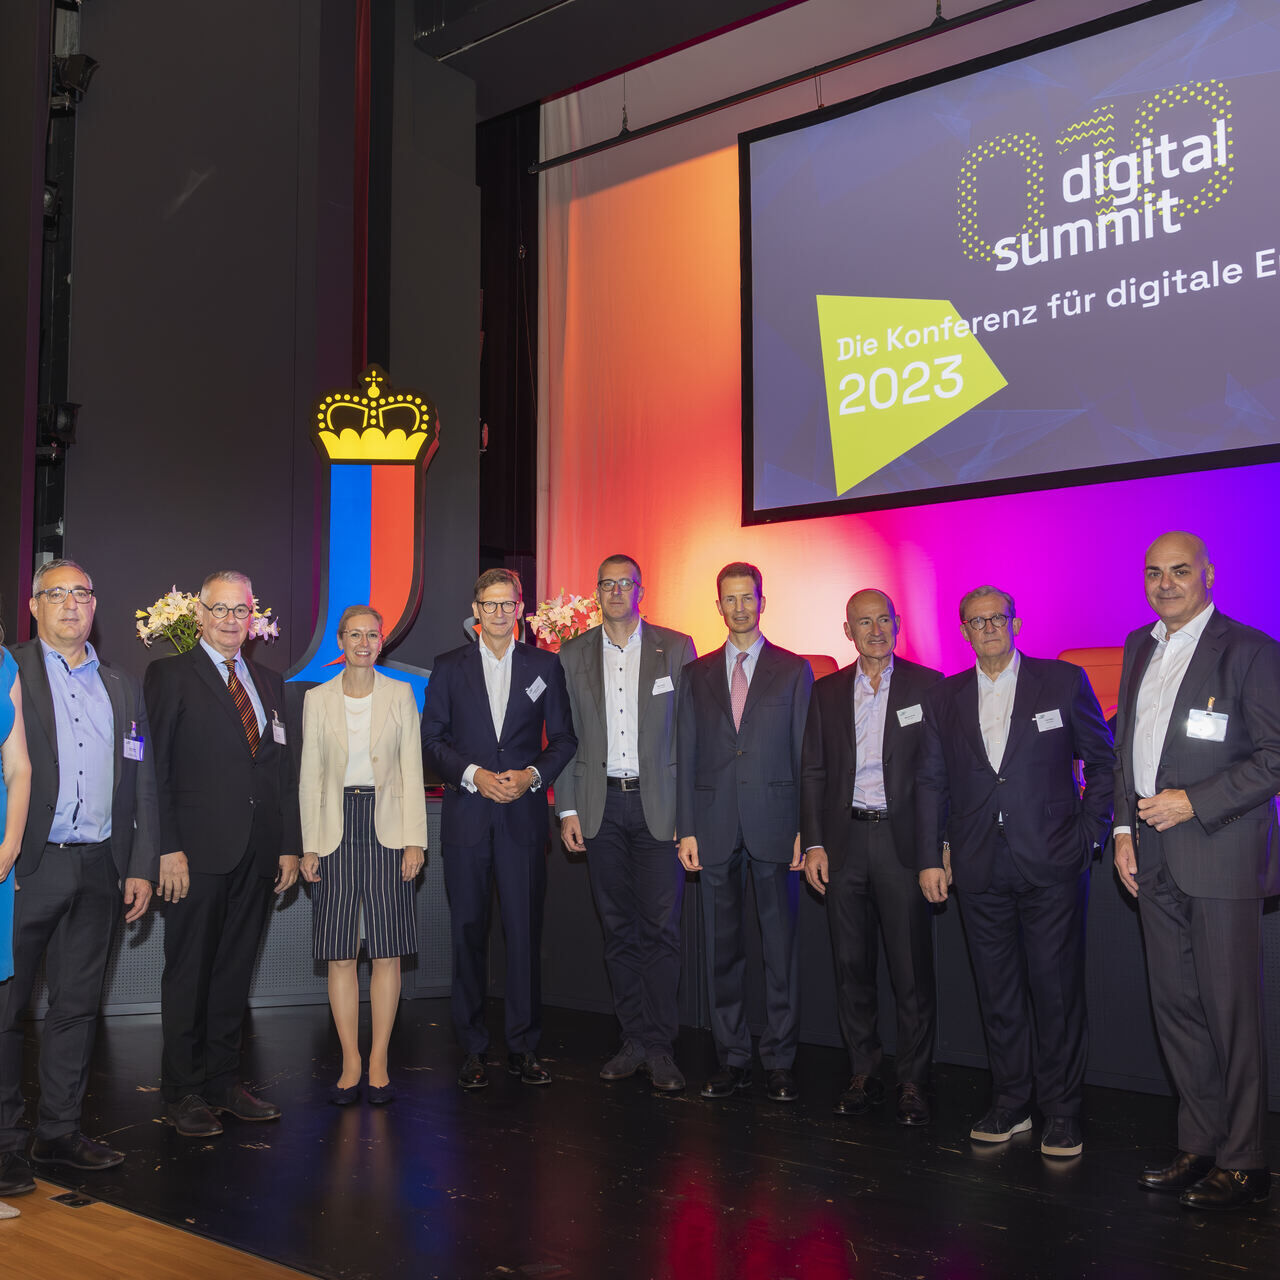 Digital Summit 2023: organizadores e palestrantes